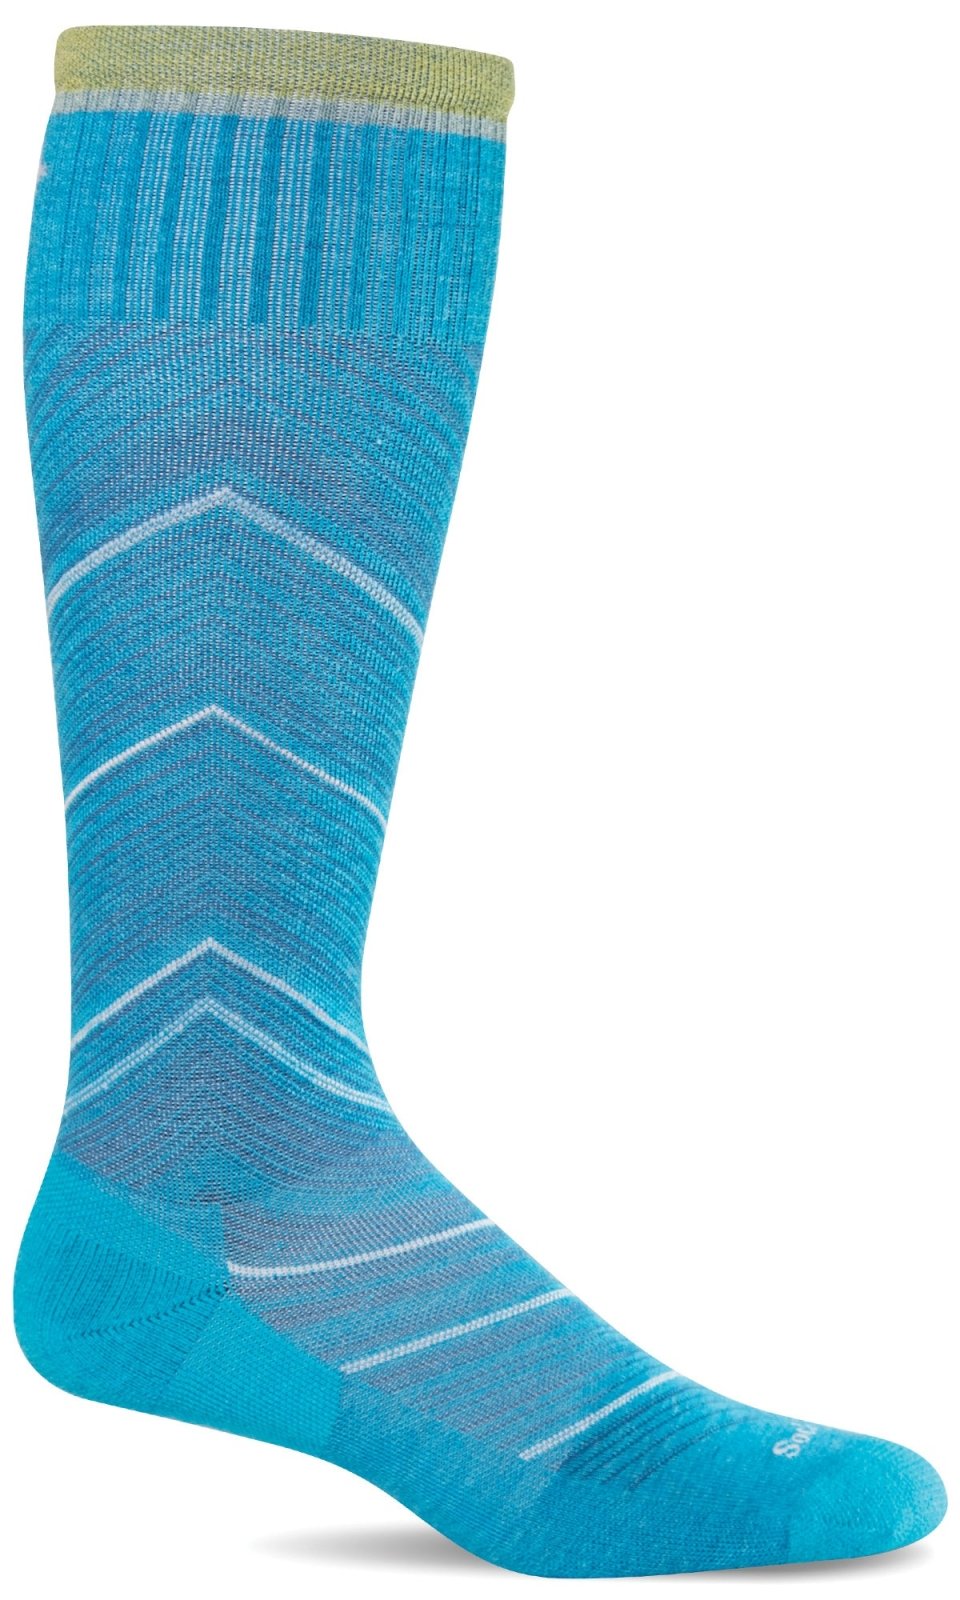 Merino Wool Socks Designed to Help You Feel Better | Sockwell